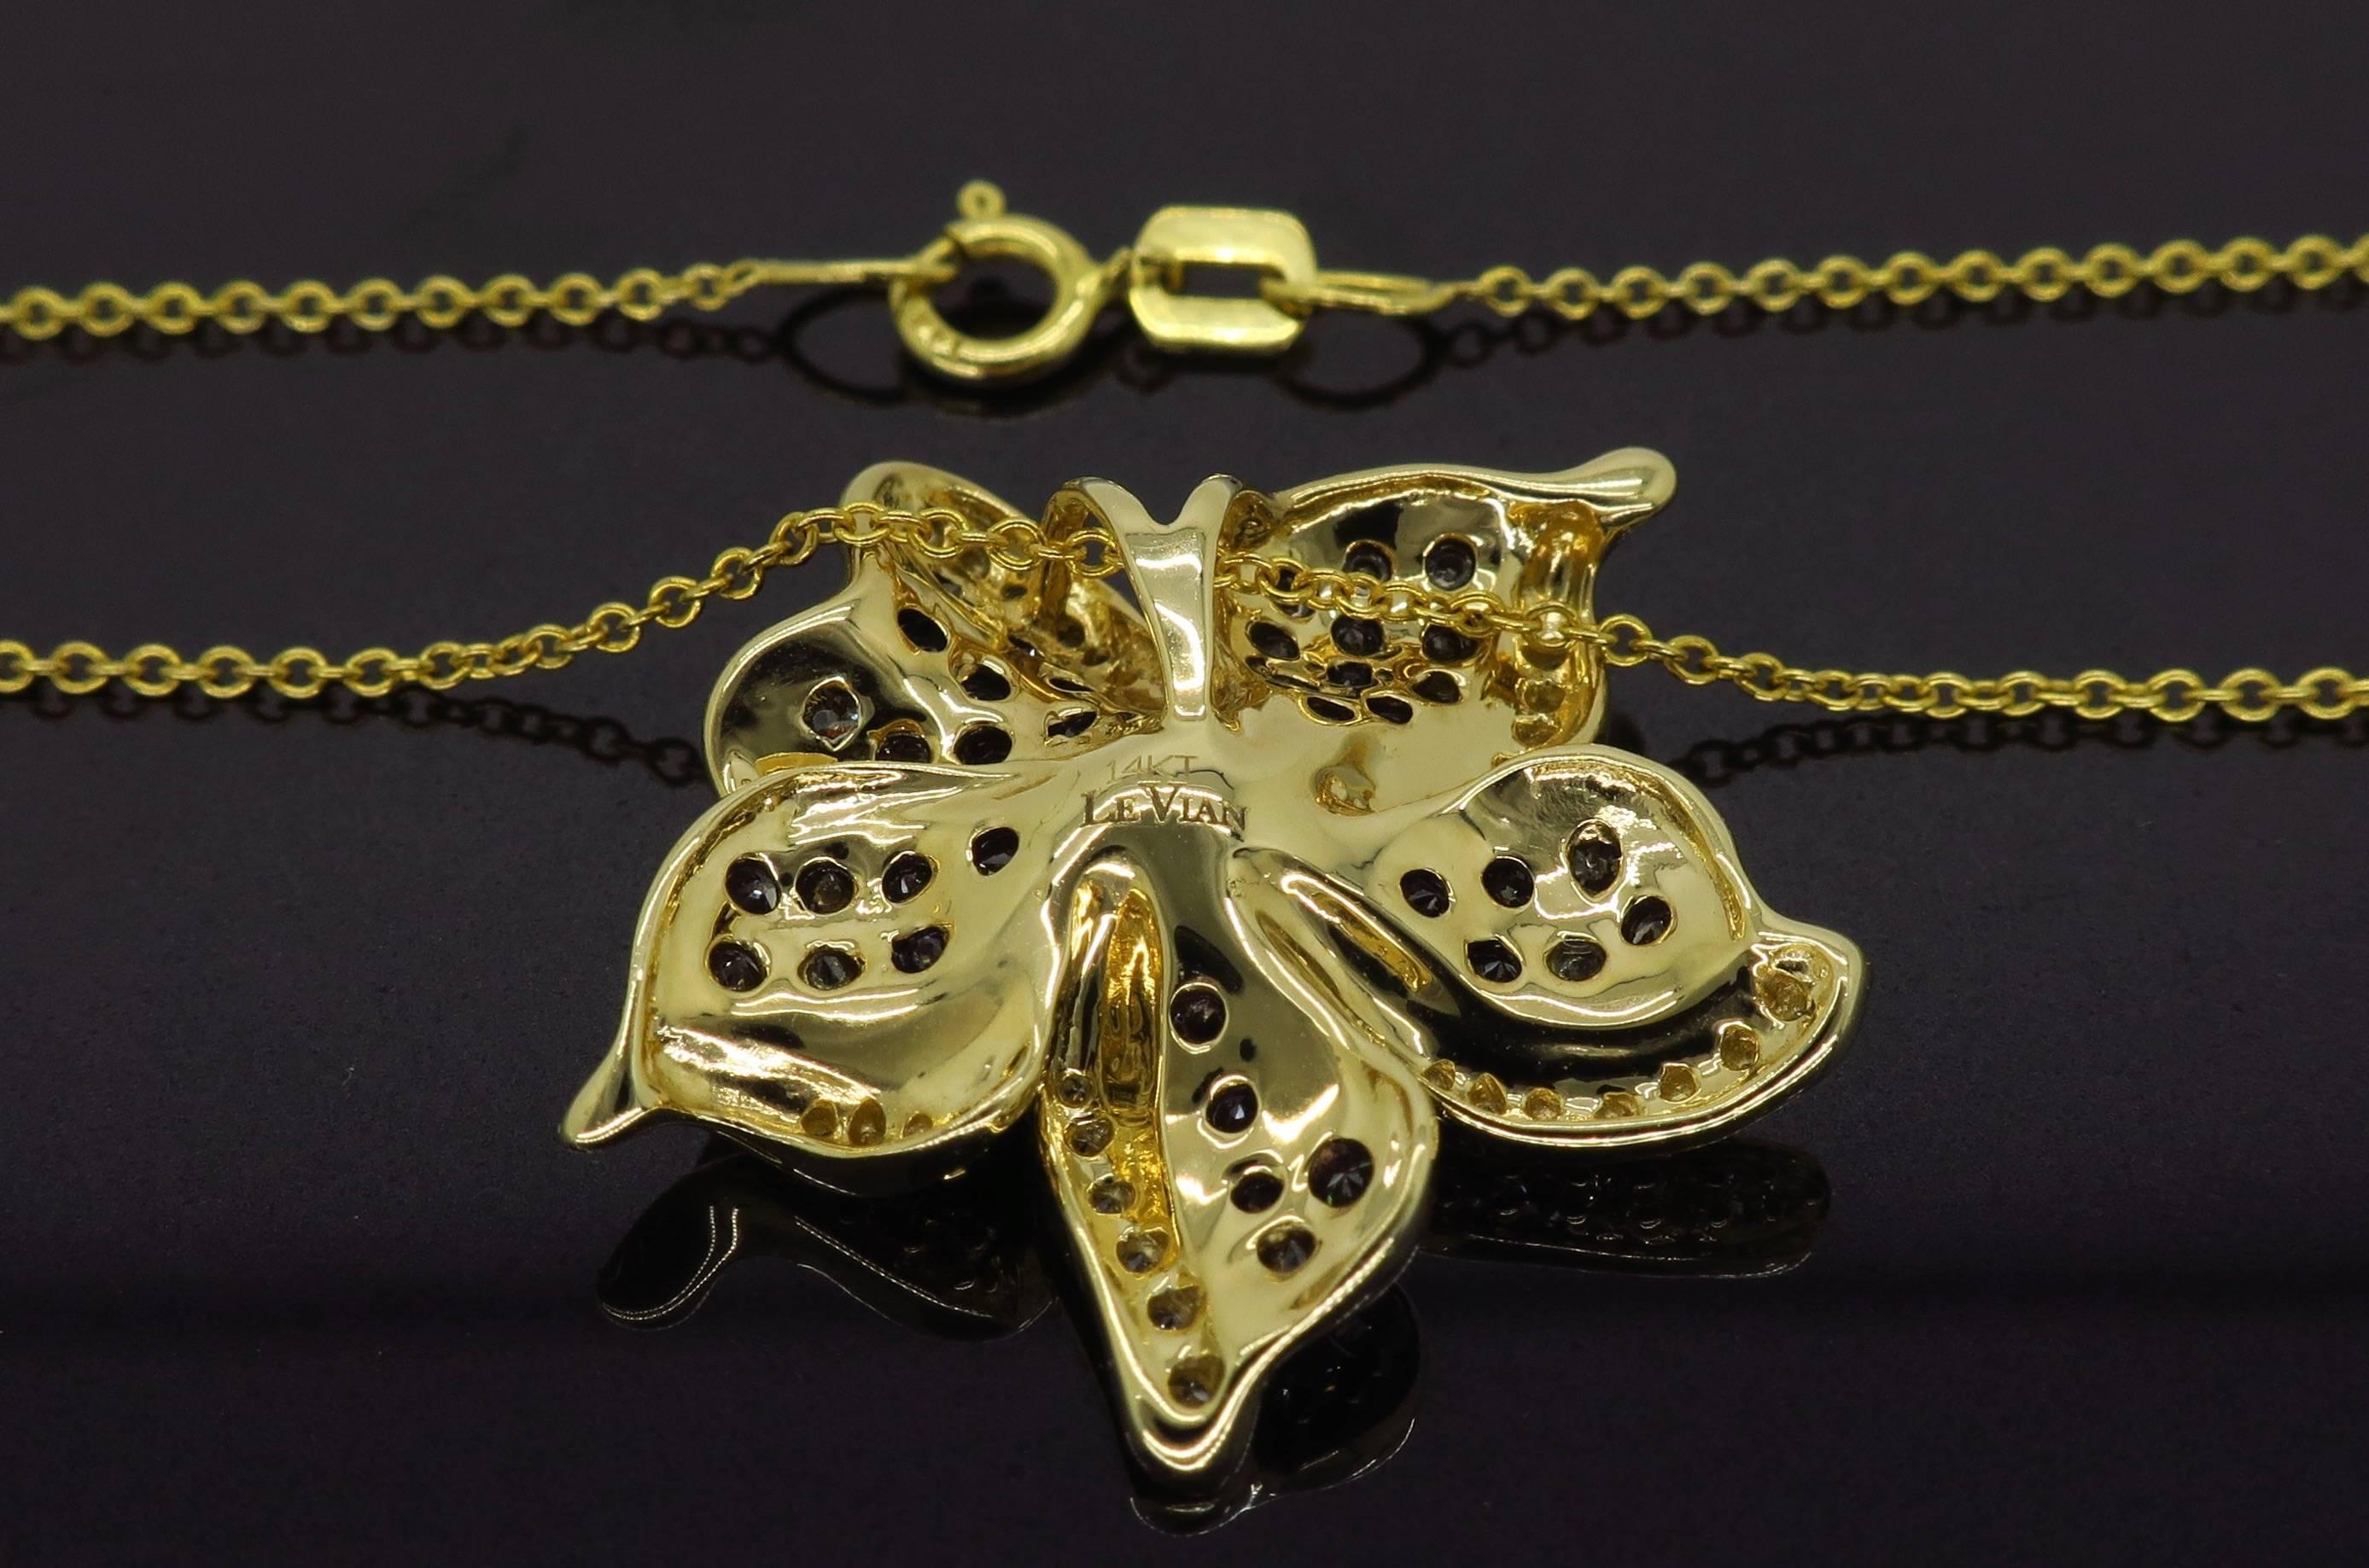 levian flower pendant